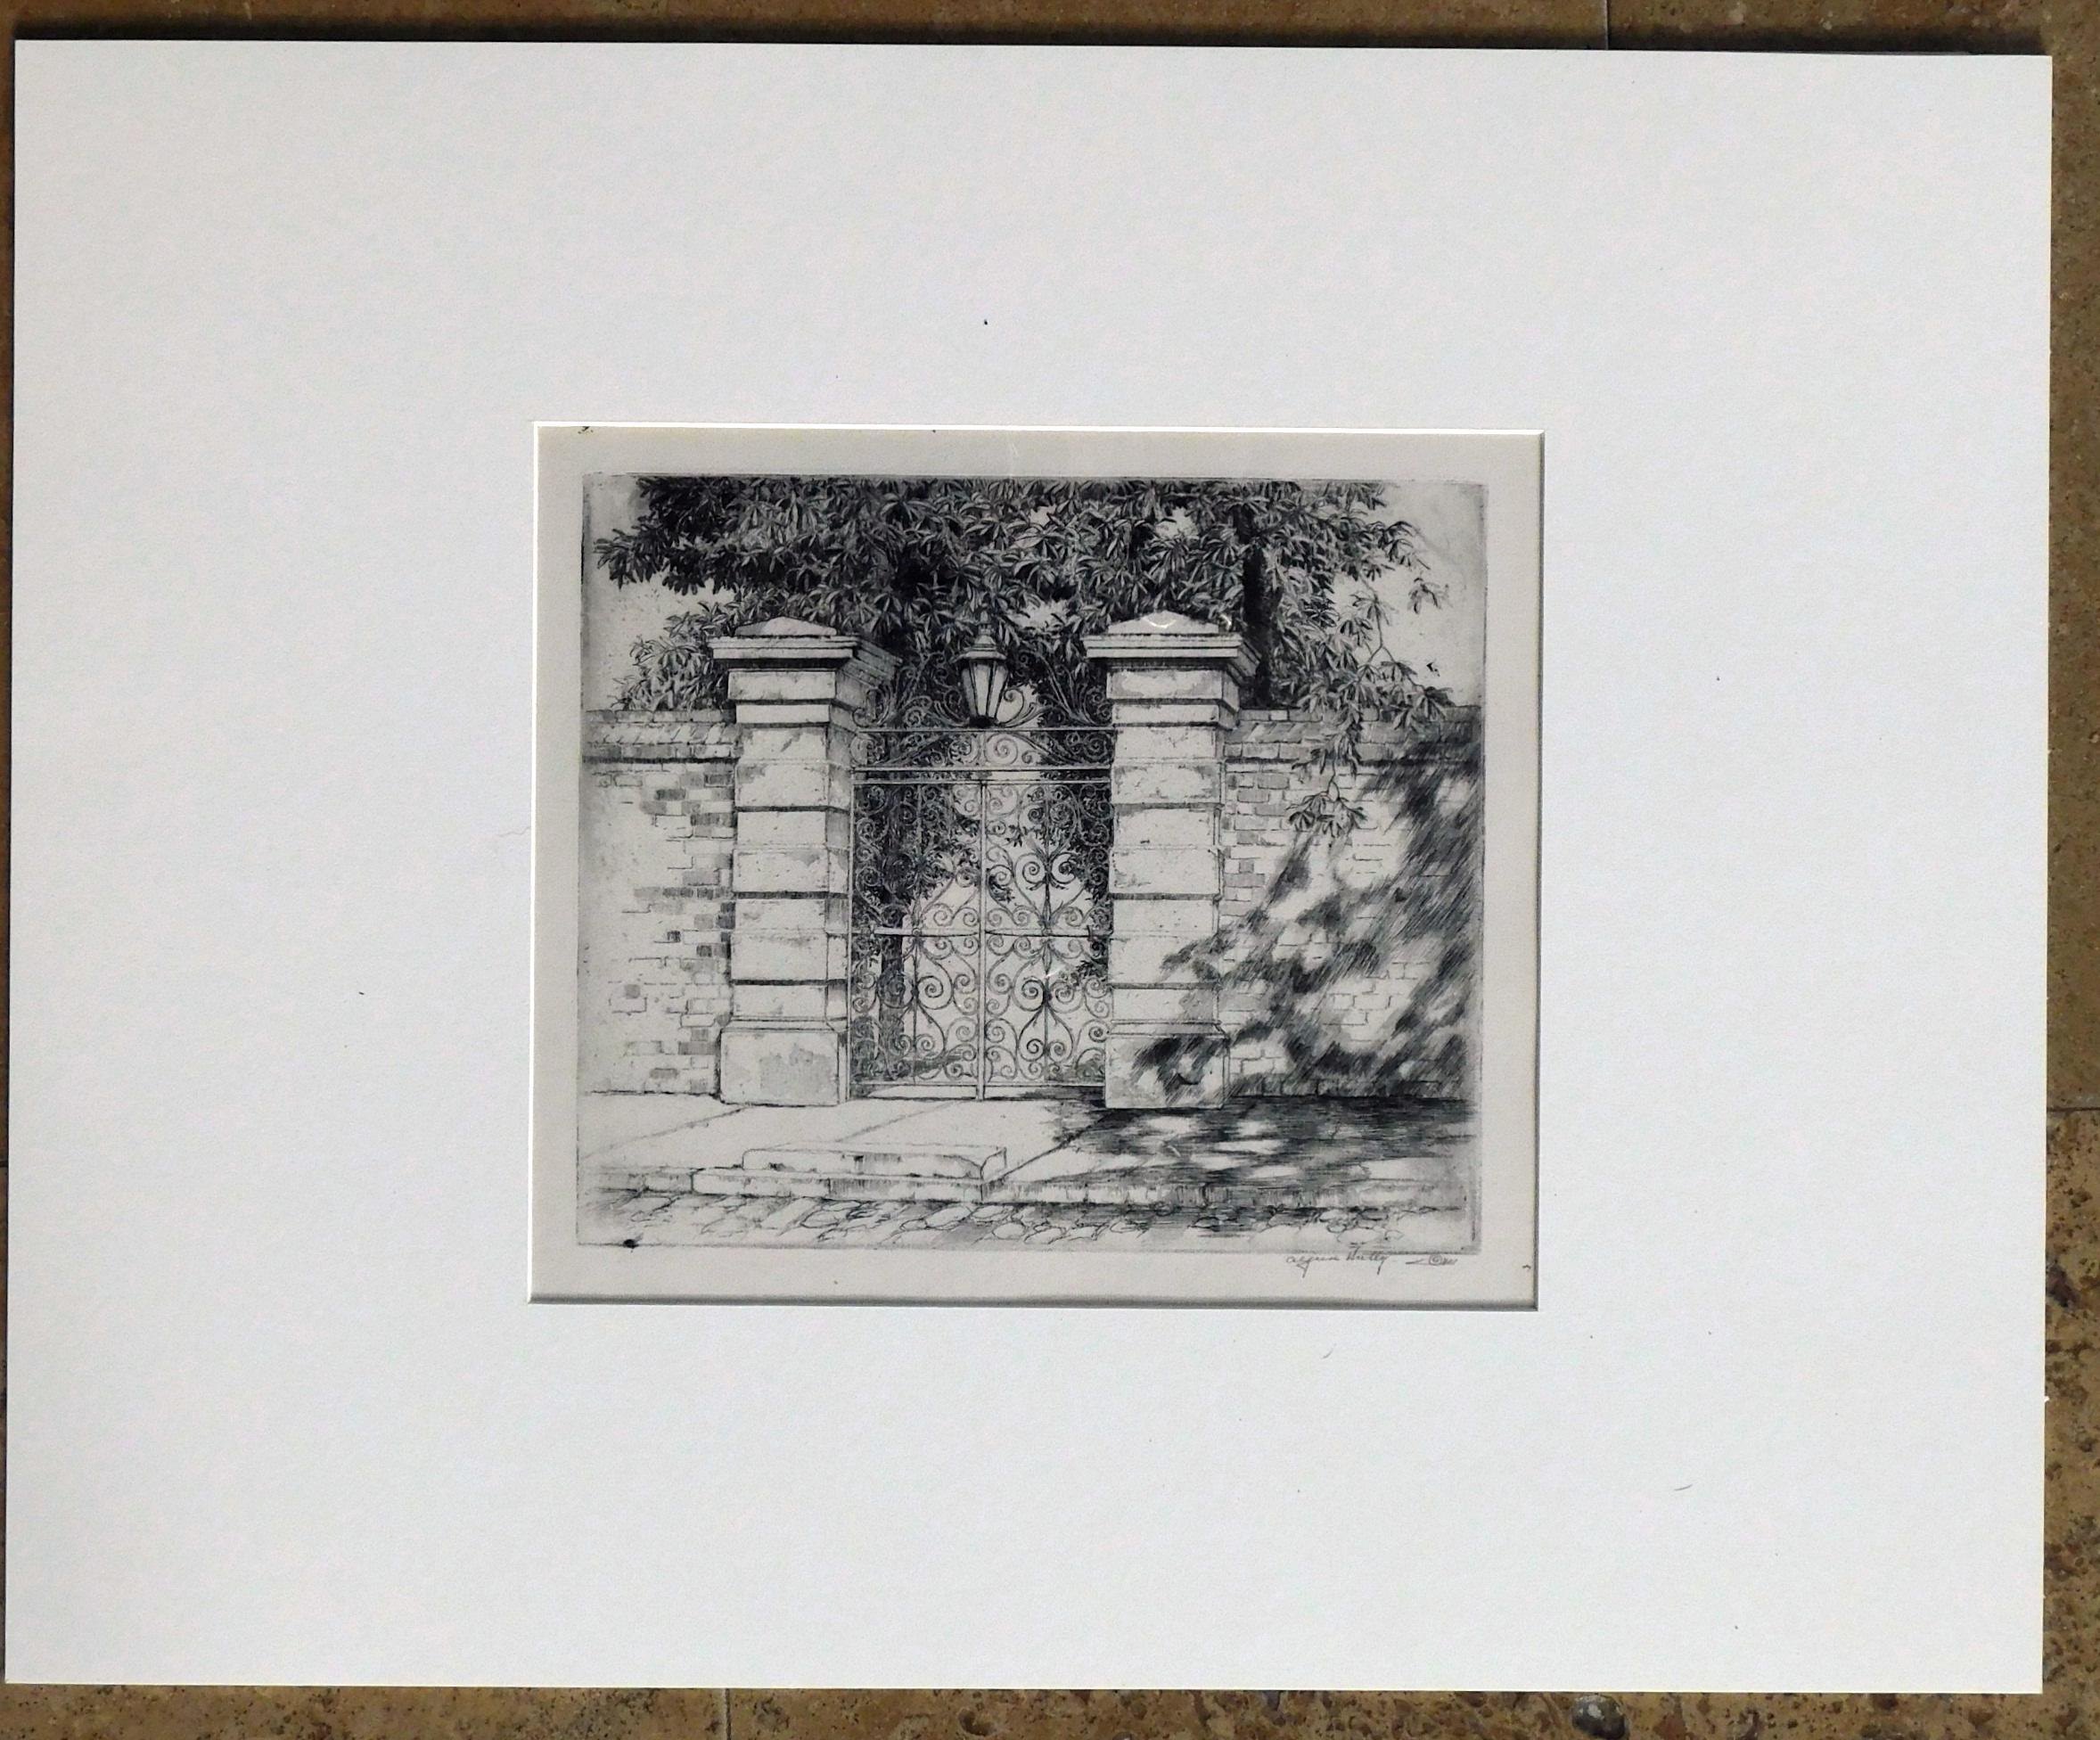 Paper Alfred Hutty Original Etching, circa 1935, “The Sword Gate” 